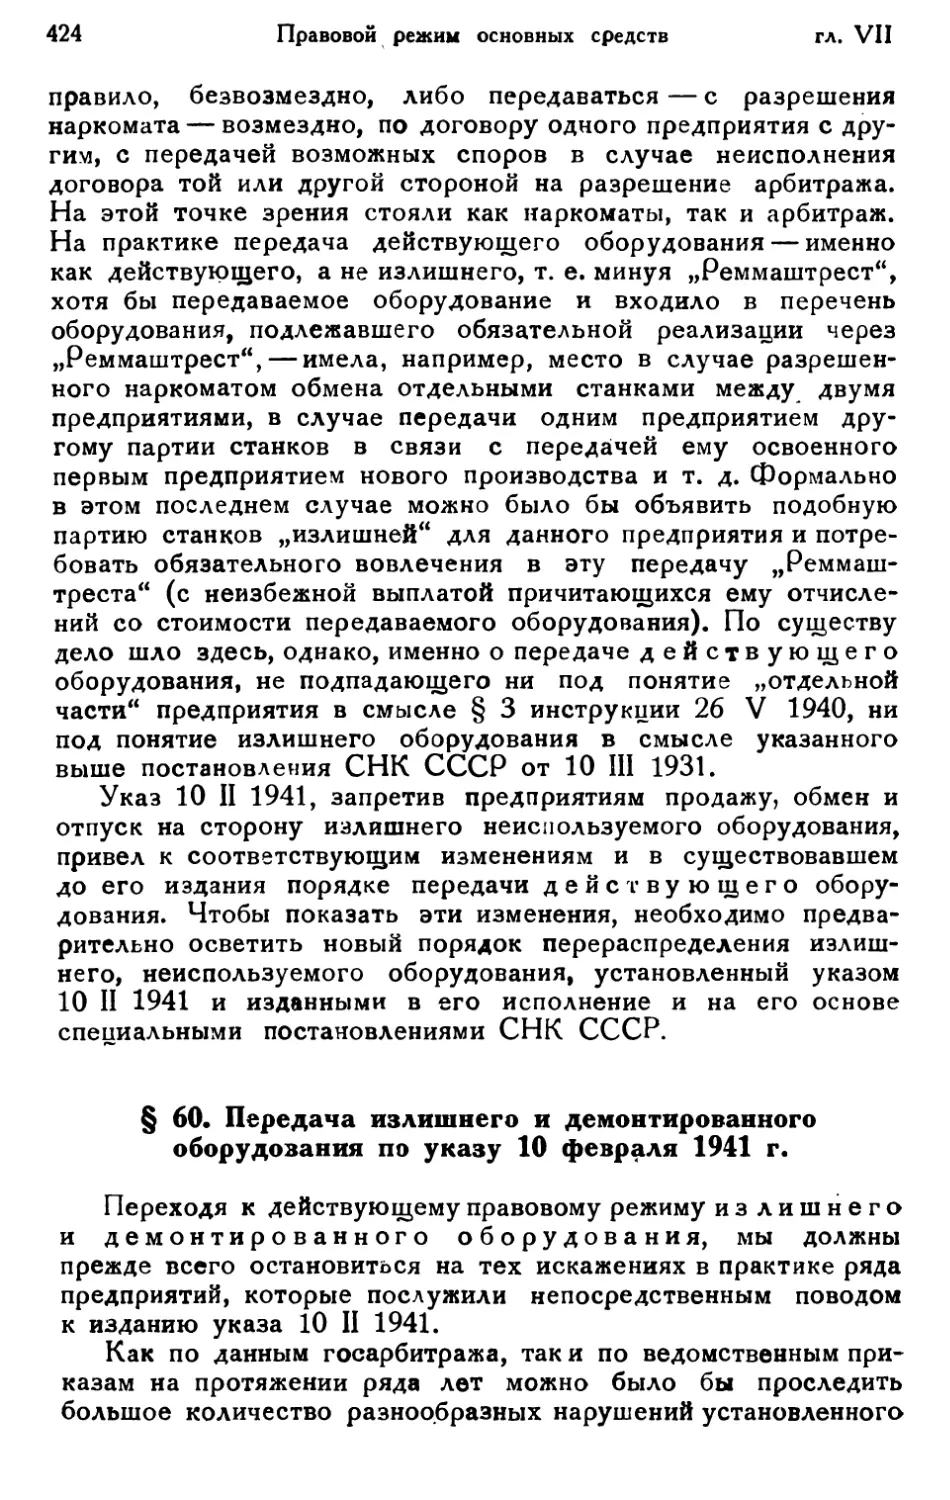 § 60. Передача излишнего и демонтированного оборудования по указу 10 февраля 1941 г